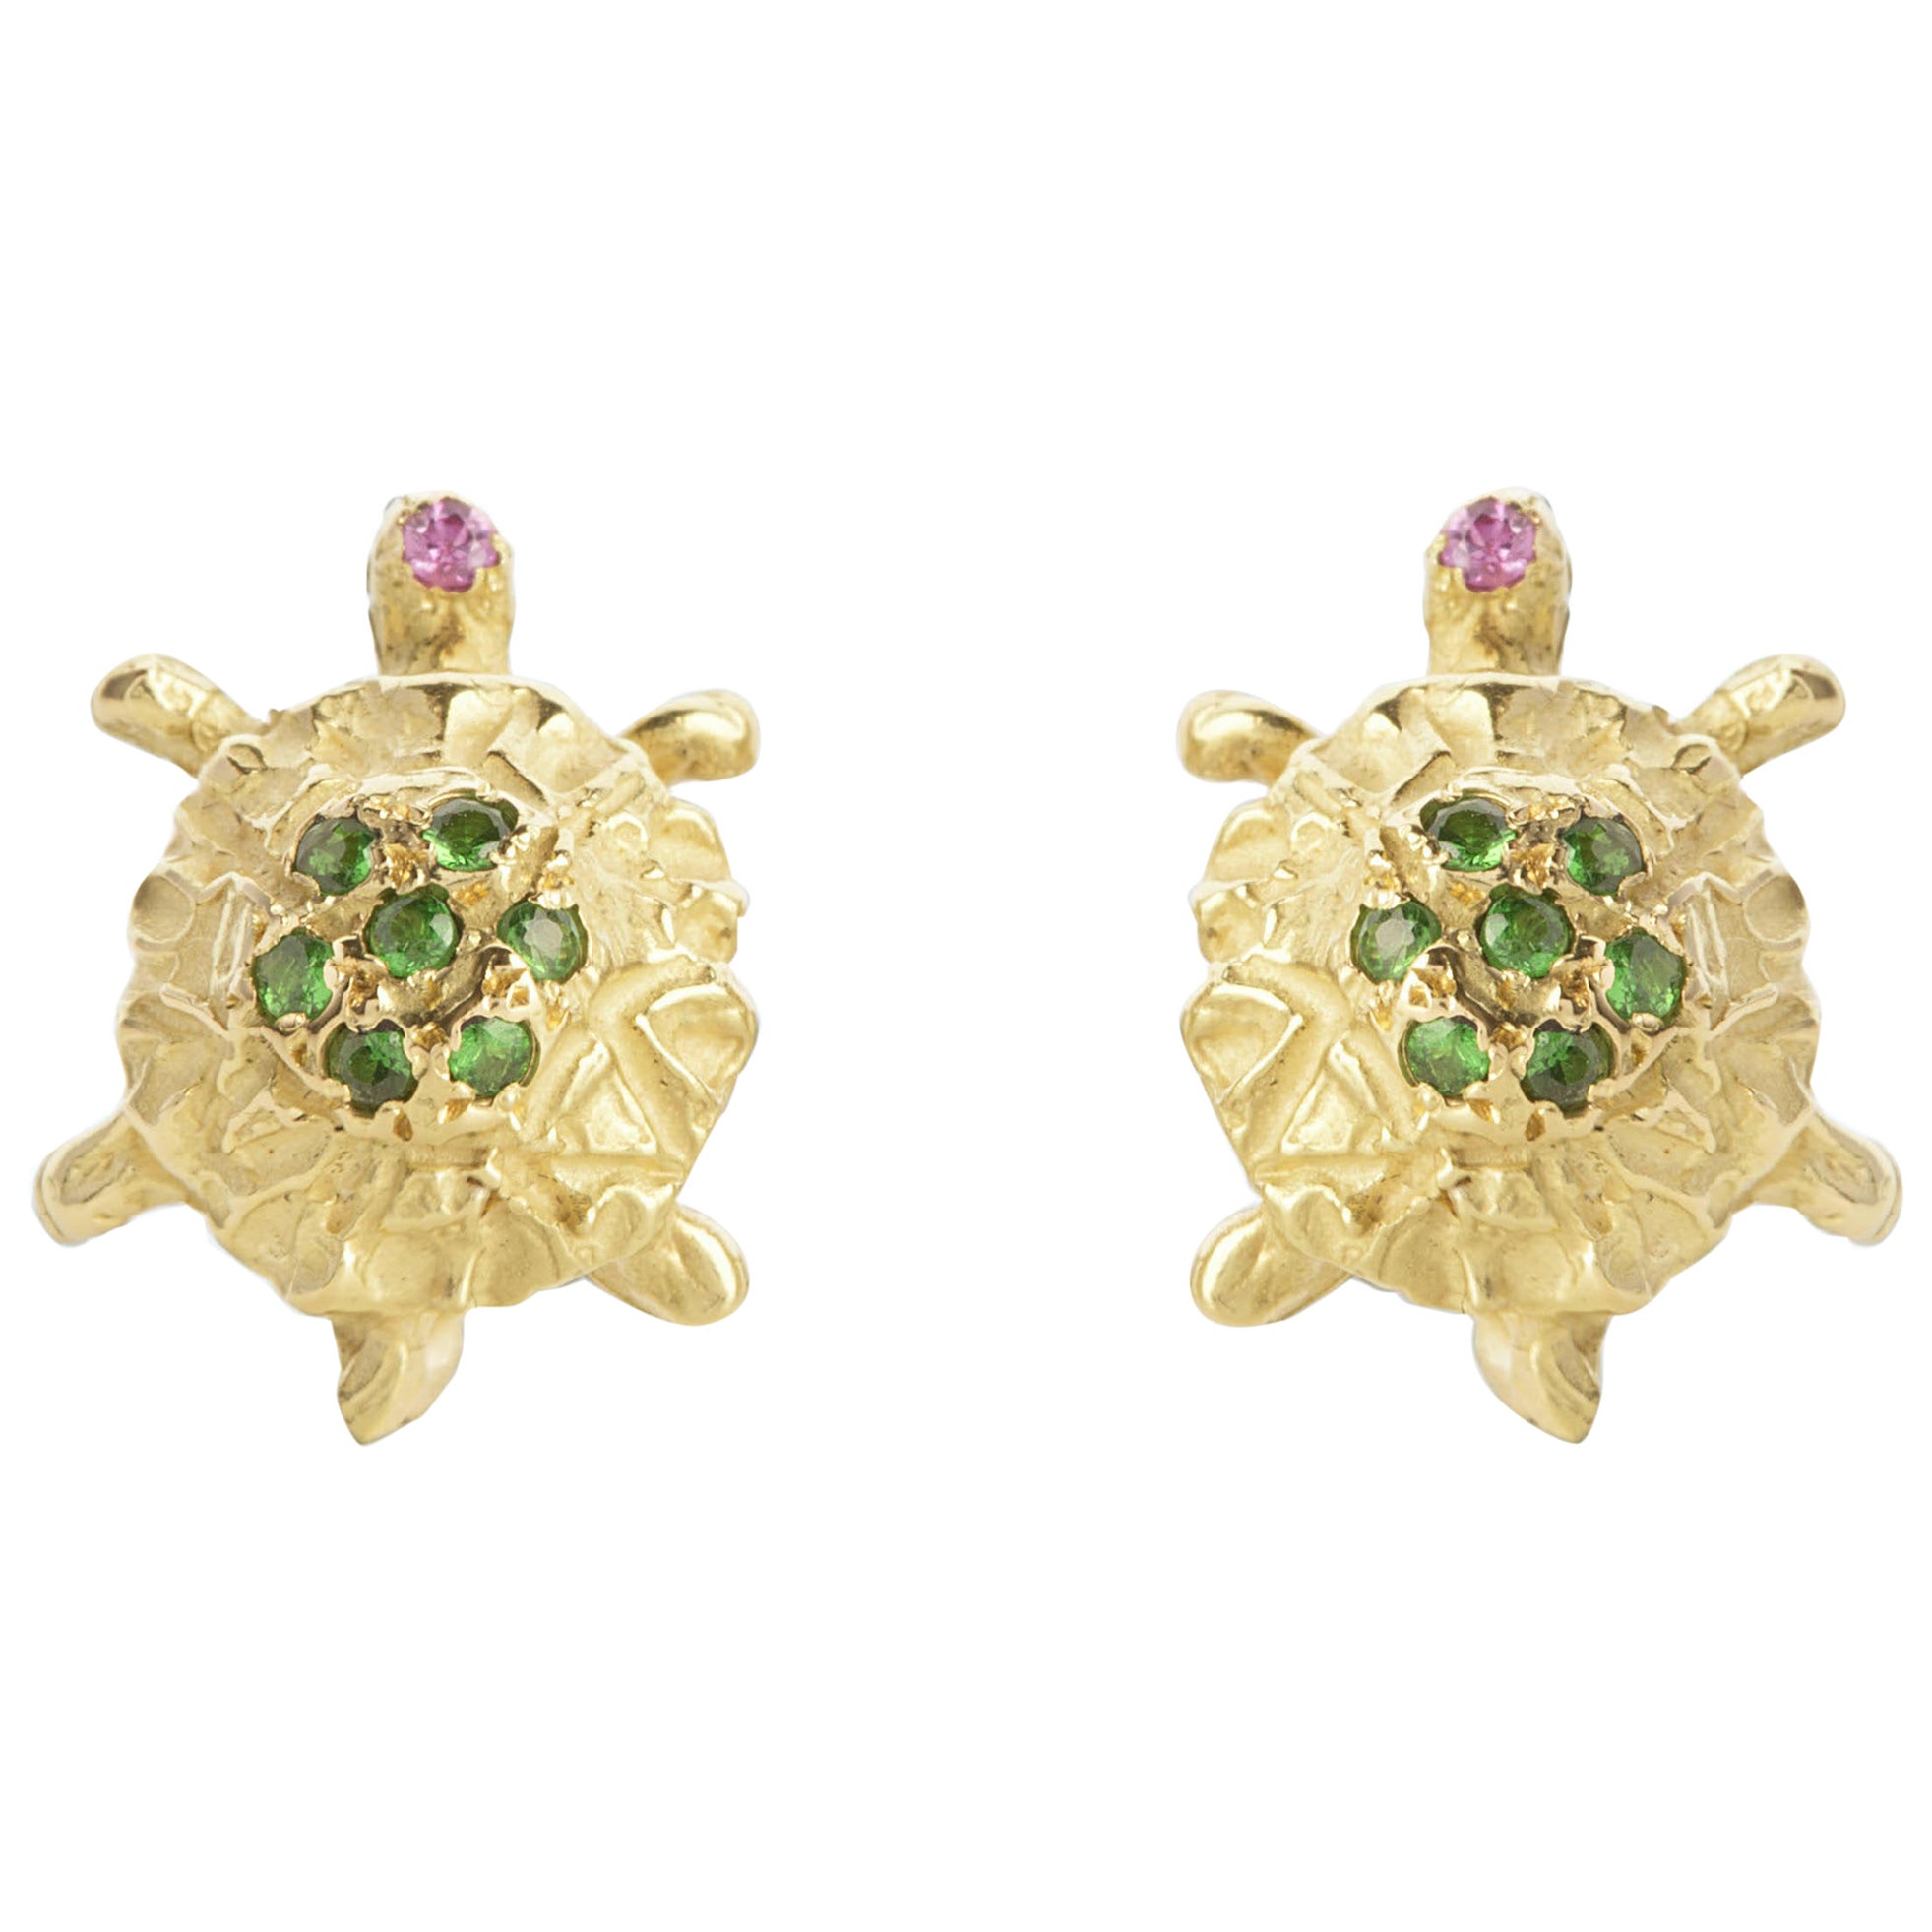 Clous d'oreilles en or 18 carats et tsavorite verte en forme de tortue, fabriquées à la main